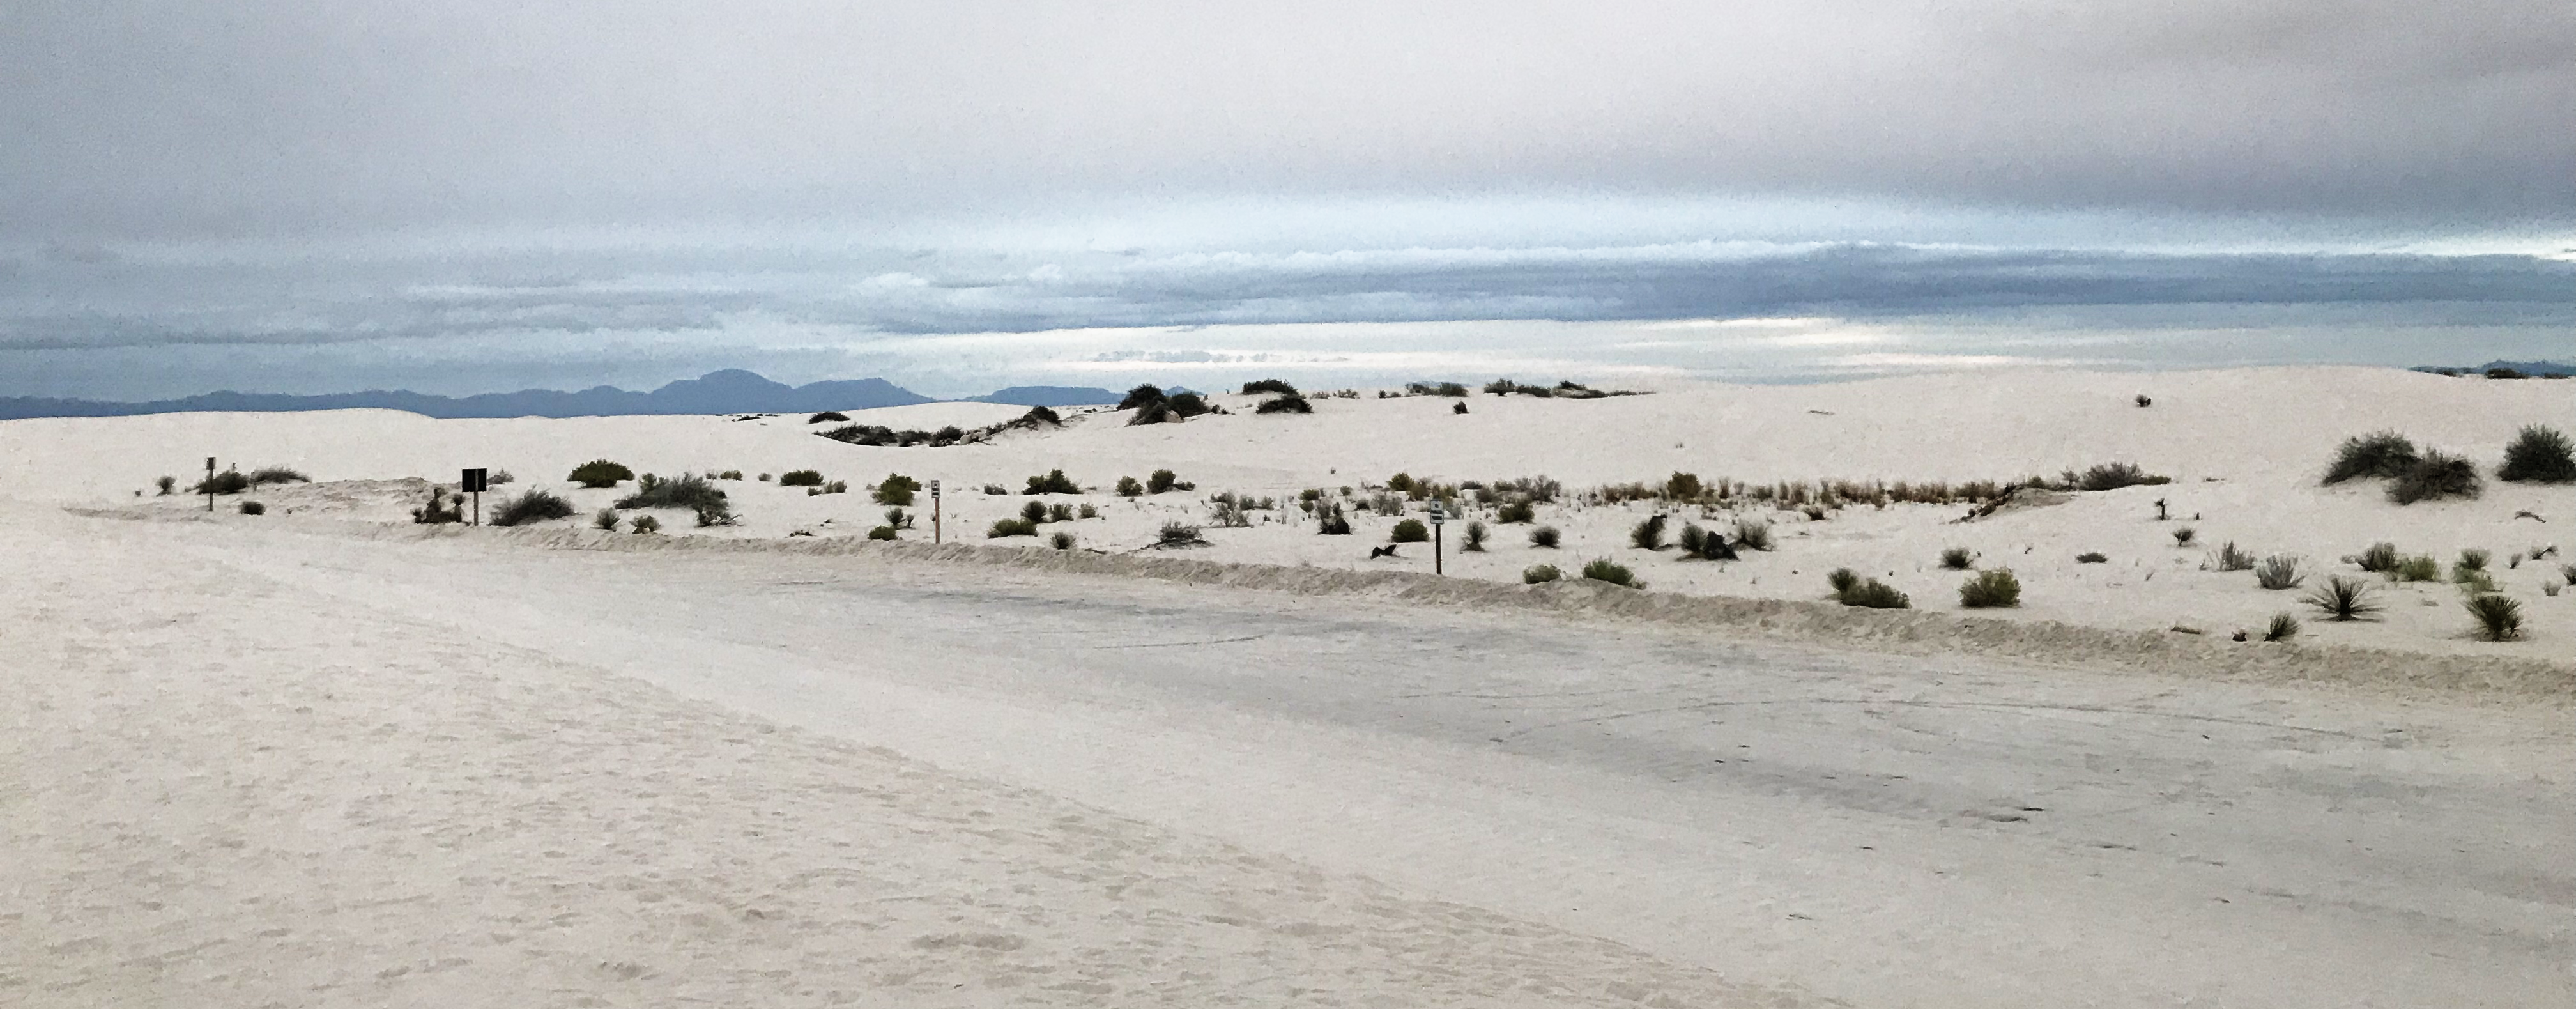 White Sands, circa 2018